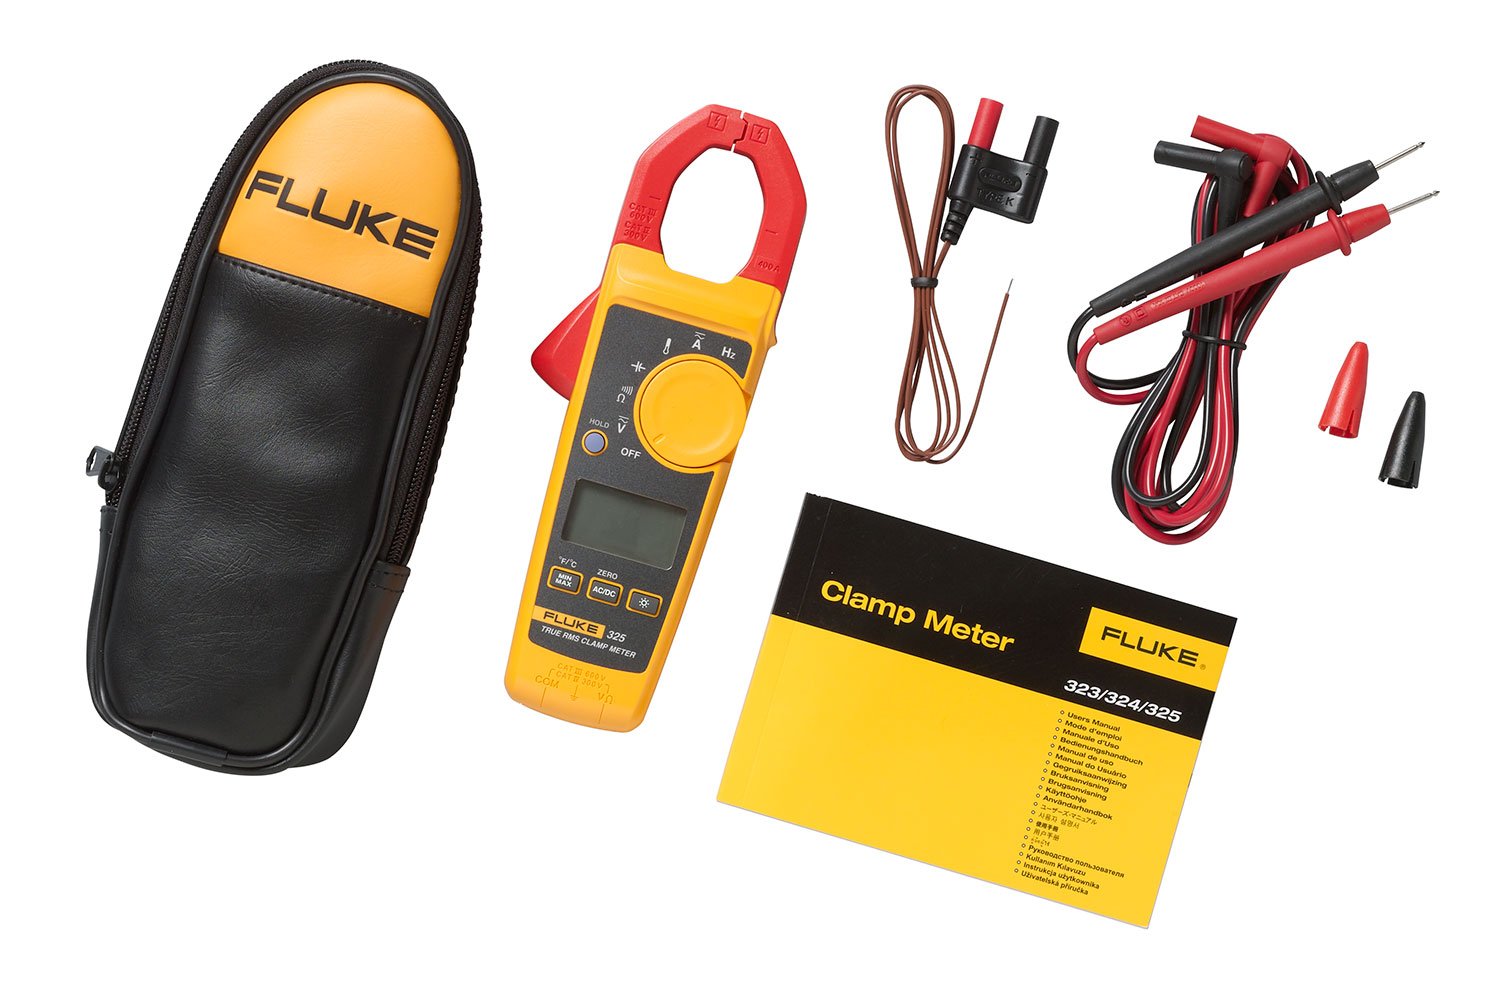 Fluke C150 Soft Carry Case for Fluke Clamp Meters 323|324|325 